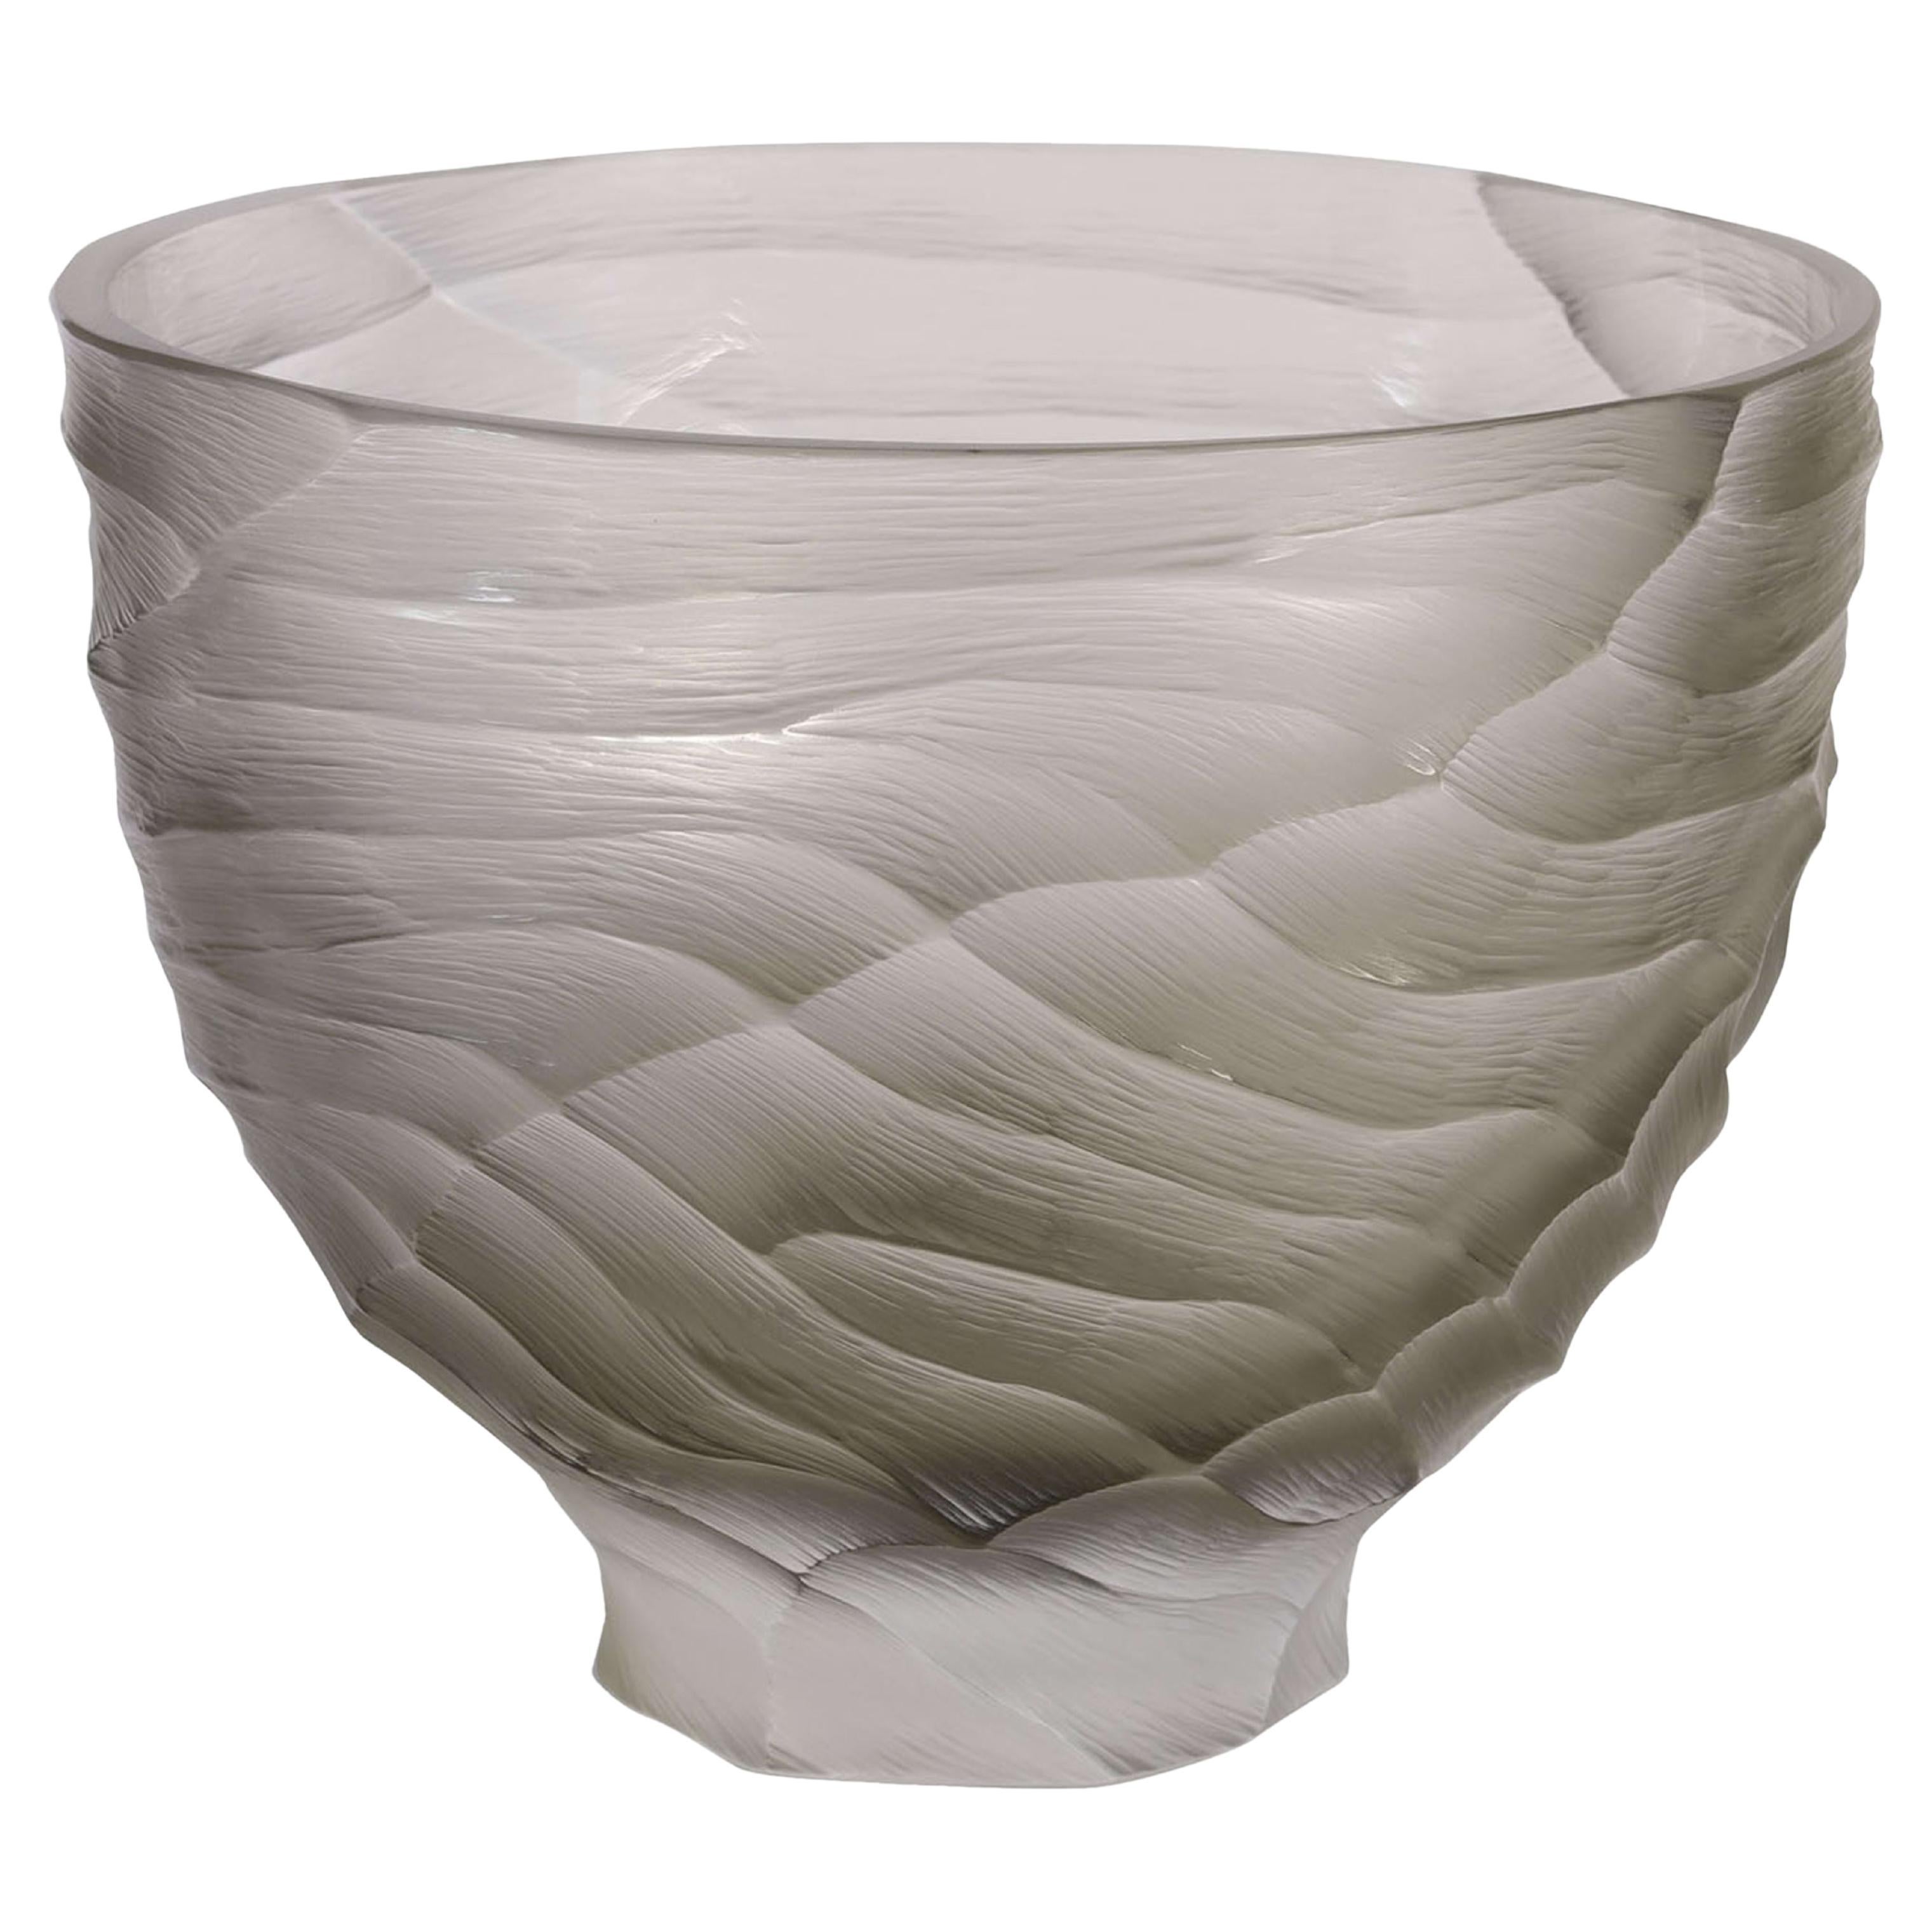 Graue Murano-Vase